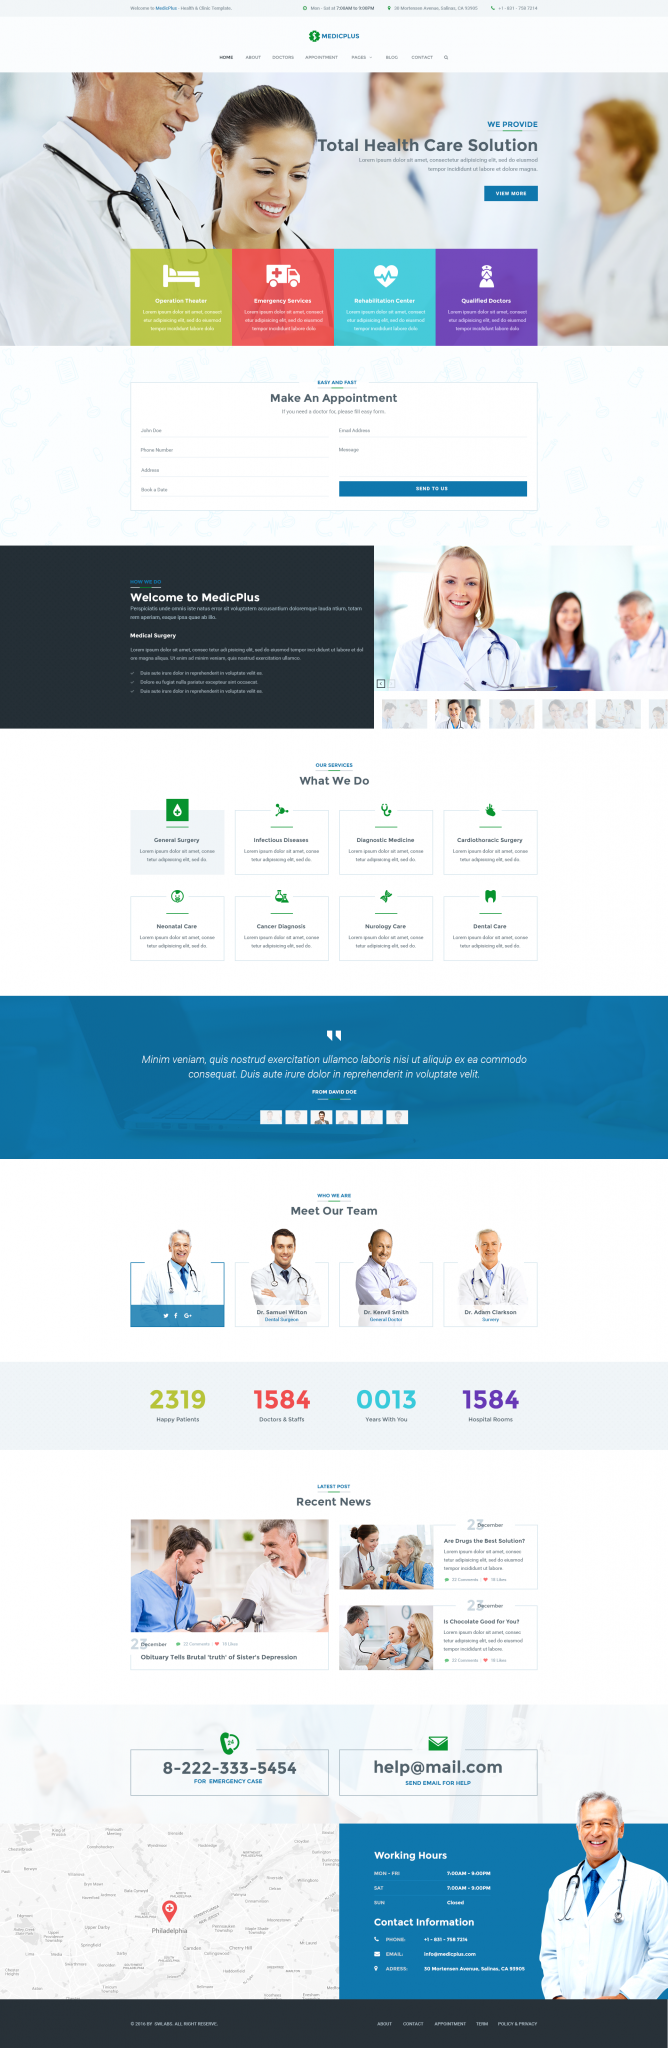 Medical Web Design Inspiration